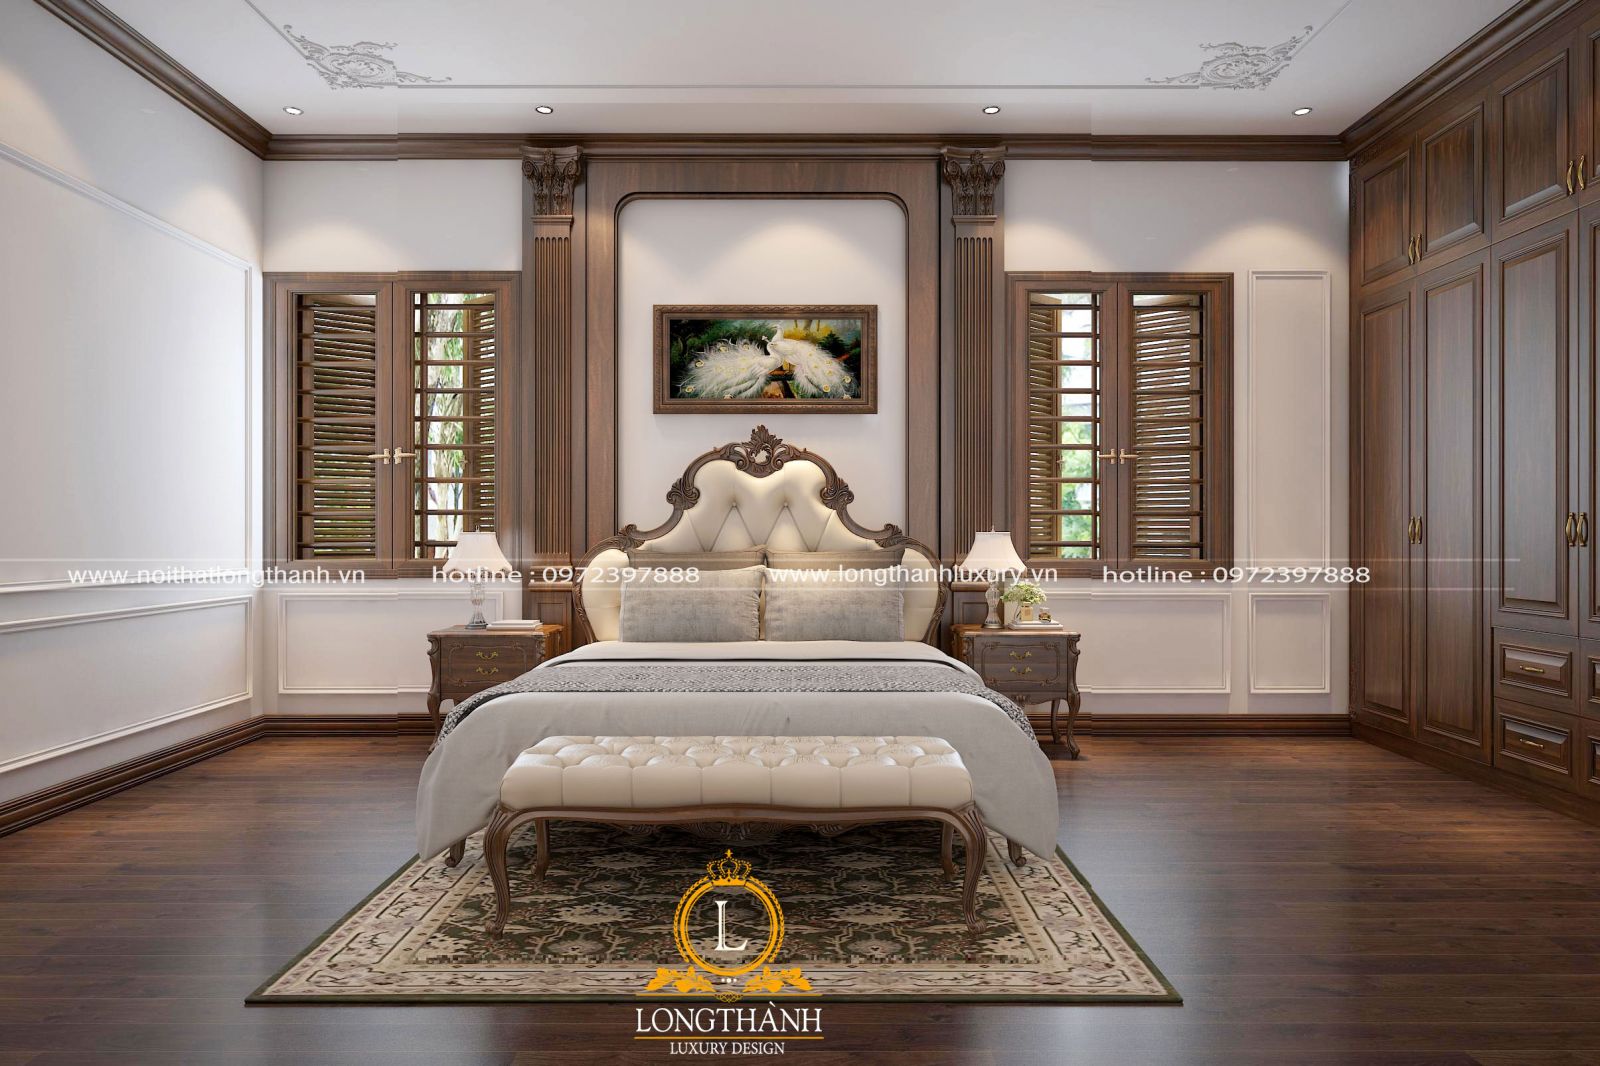 Phòng ngủ tân cổ điển được thiết kế sang trọng với hệ cửa sổ thông thoáng